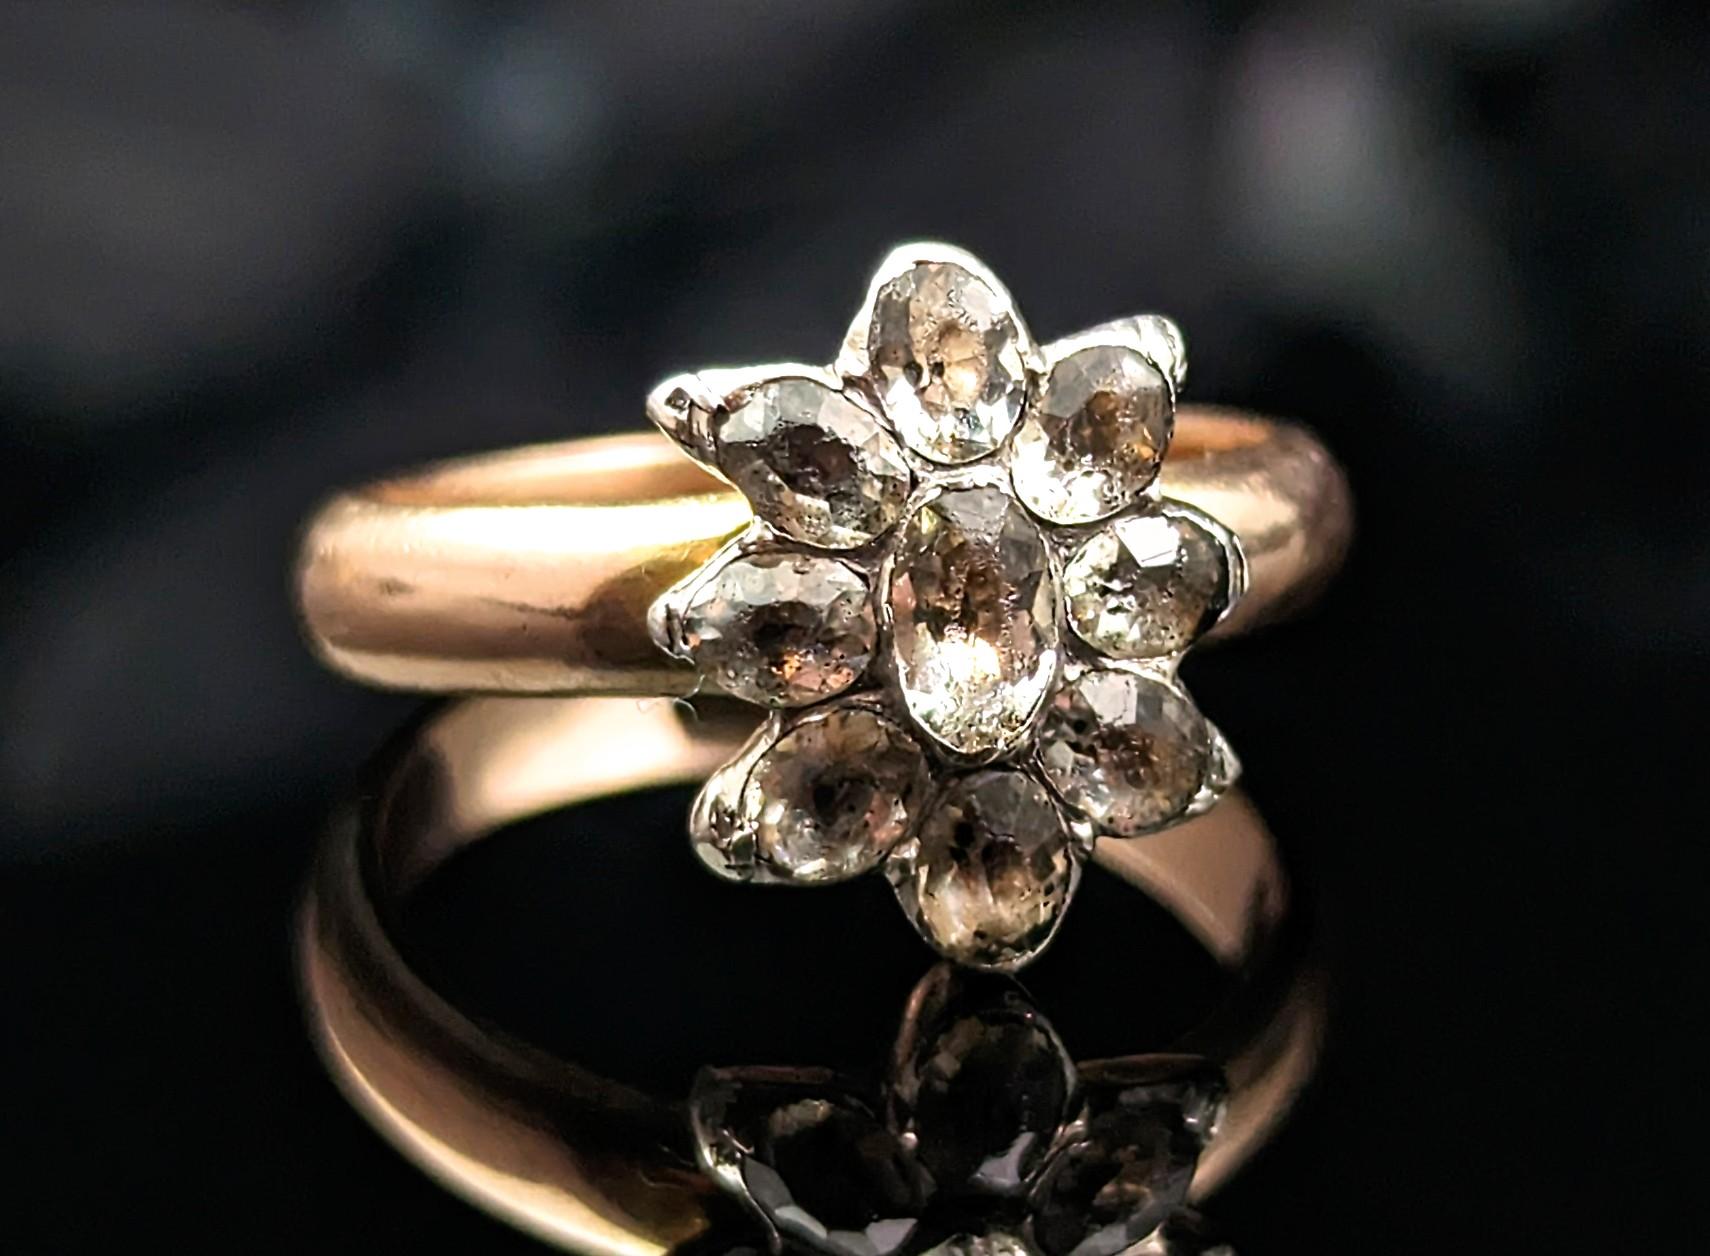 black speck in diamond ring